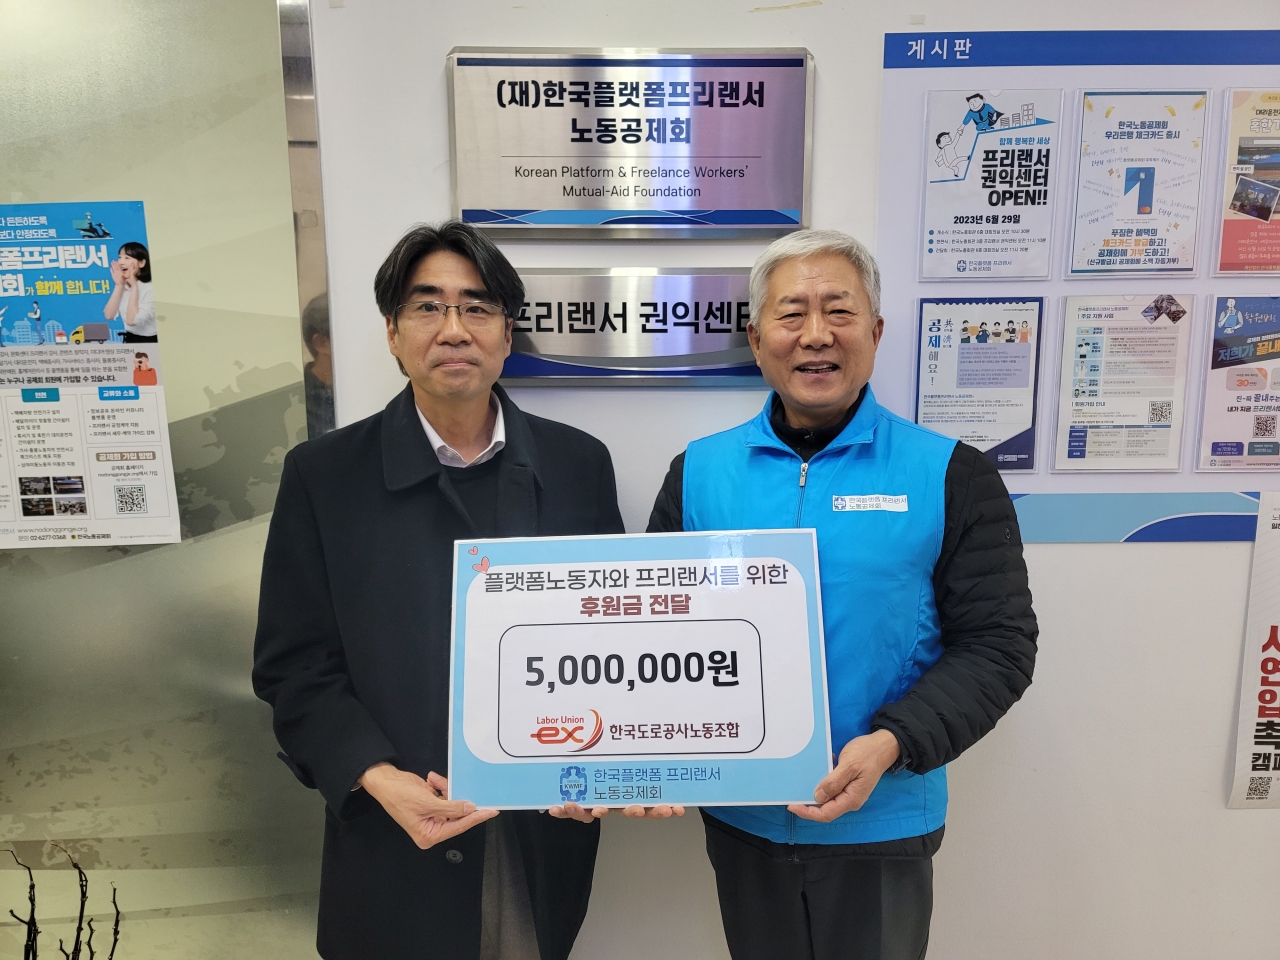 ▲ 도로공사노조는 17일 한국플랫폼프리랜서노동공제회에 성금 500만원을 기부했다. <한국플랫폼프리랜서노동공제회>